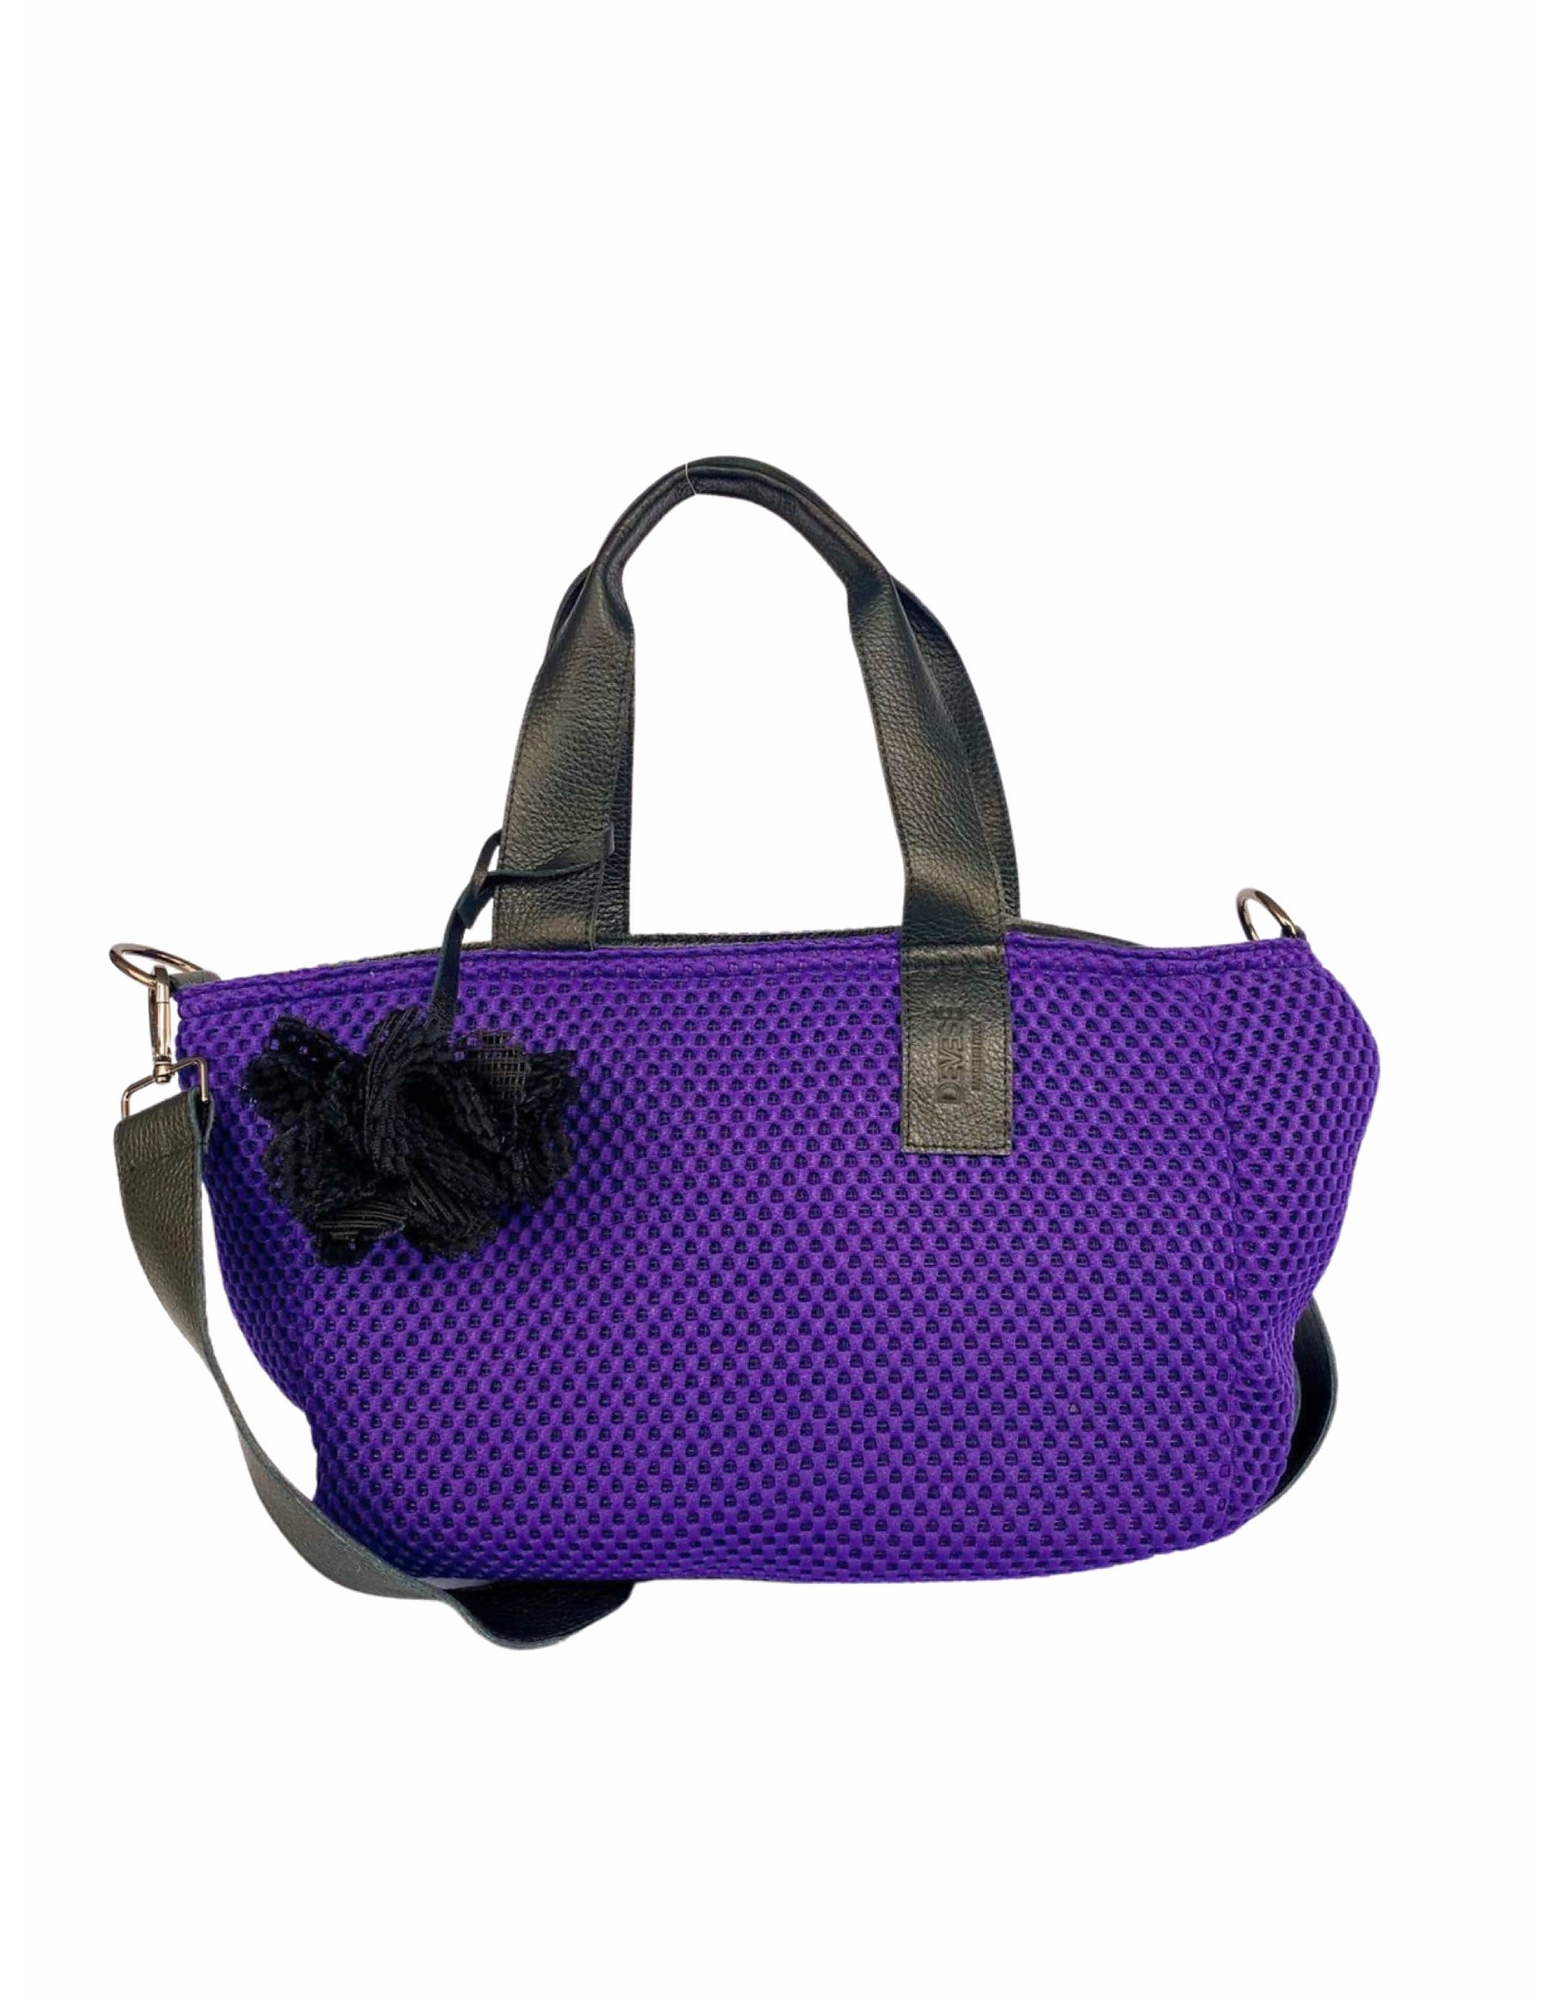 Devesé Designer Handbags Fanny/d90 - Hand Bag, Shoulder Bag And Crossbody Bag In Violet